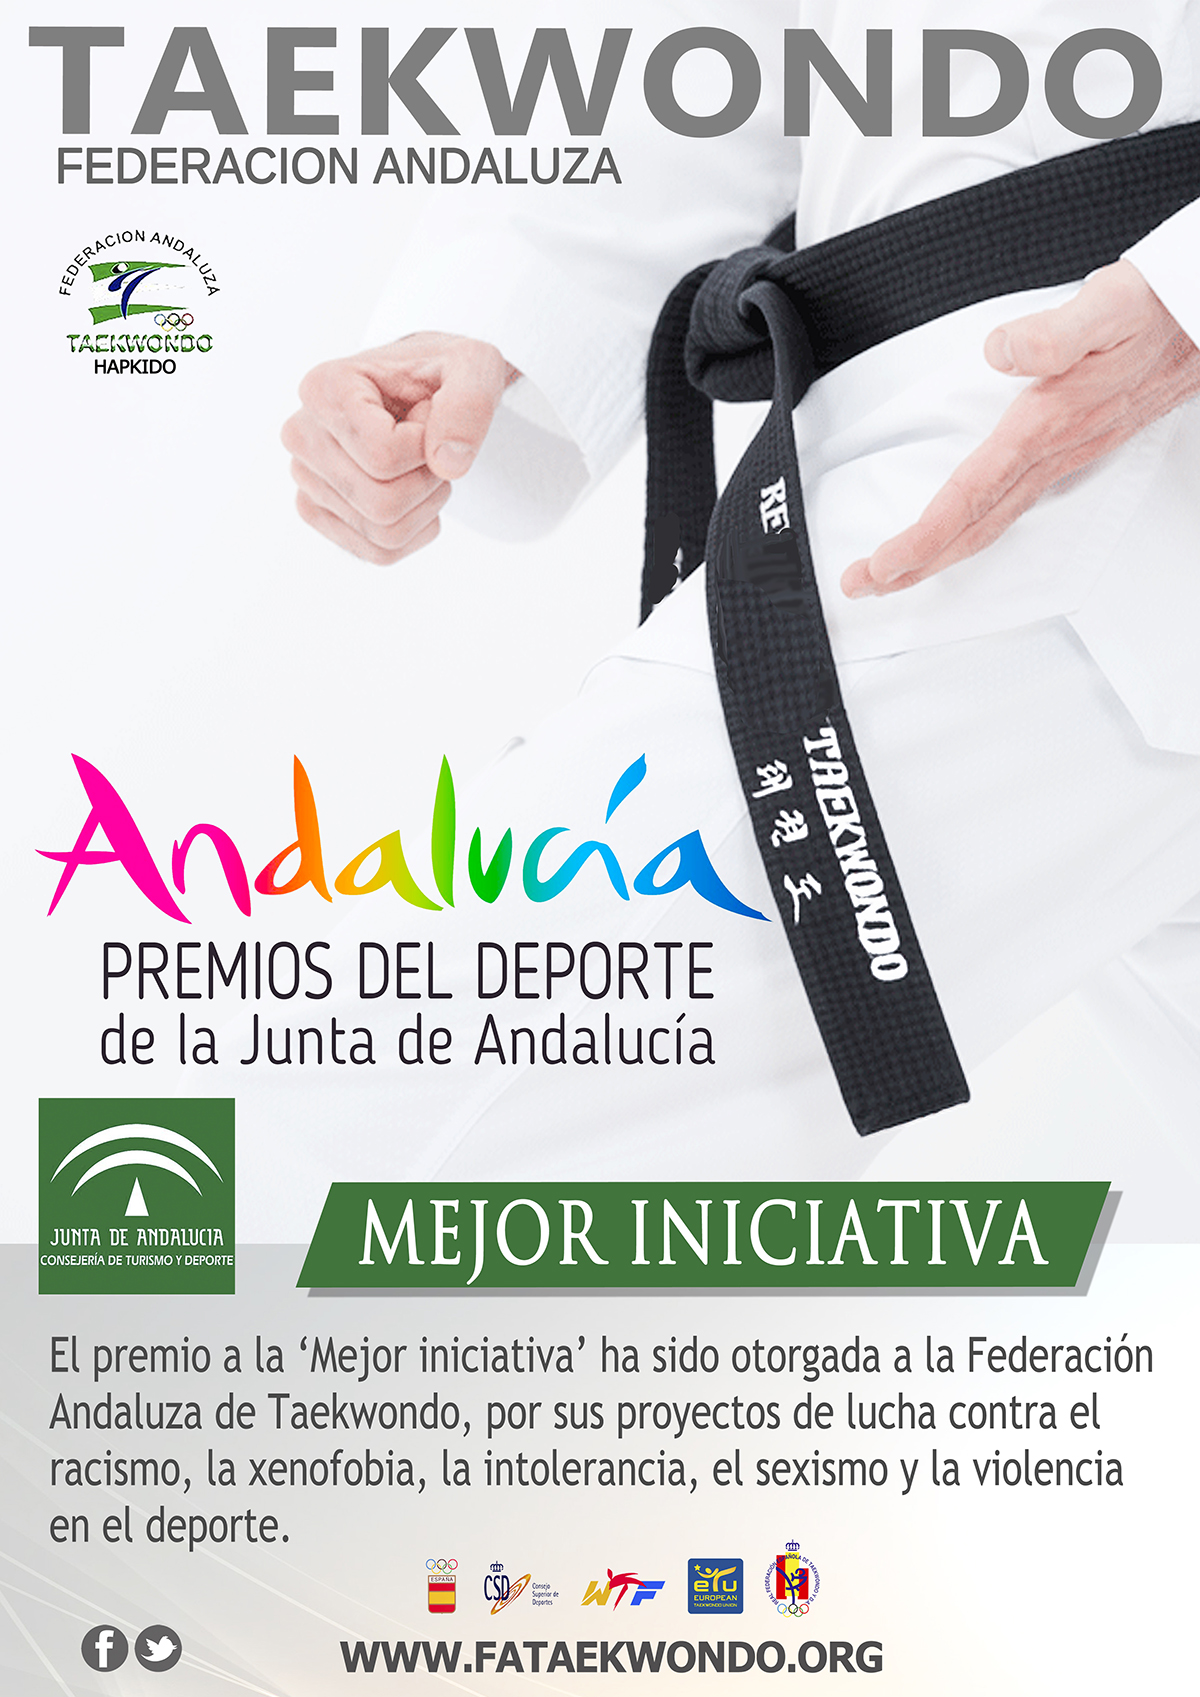 Federación Andaluza reconocida por su gran iniciativa